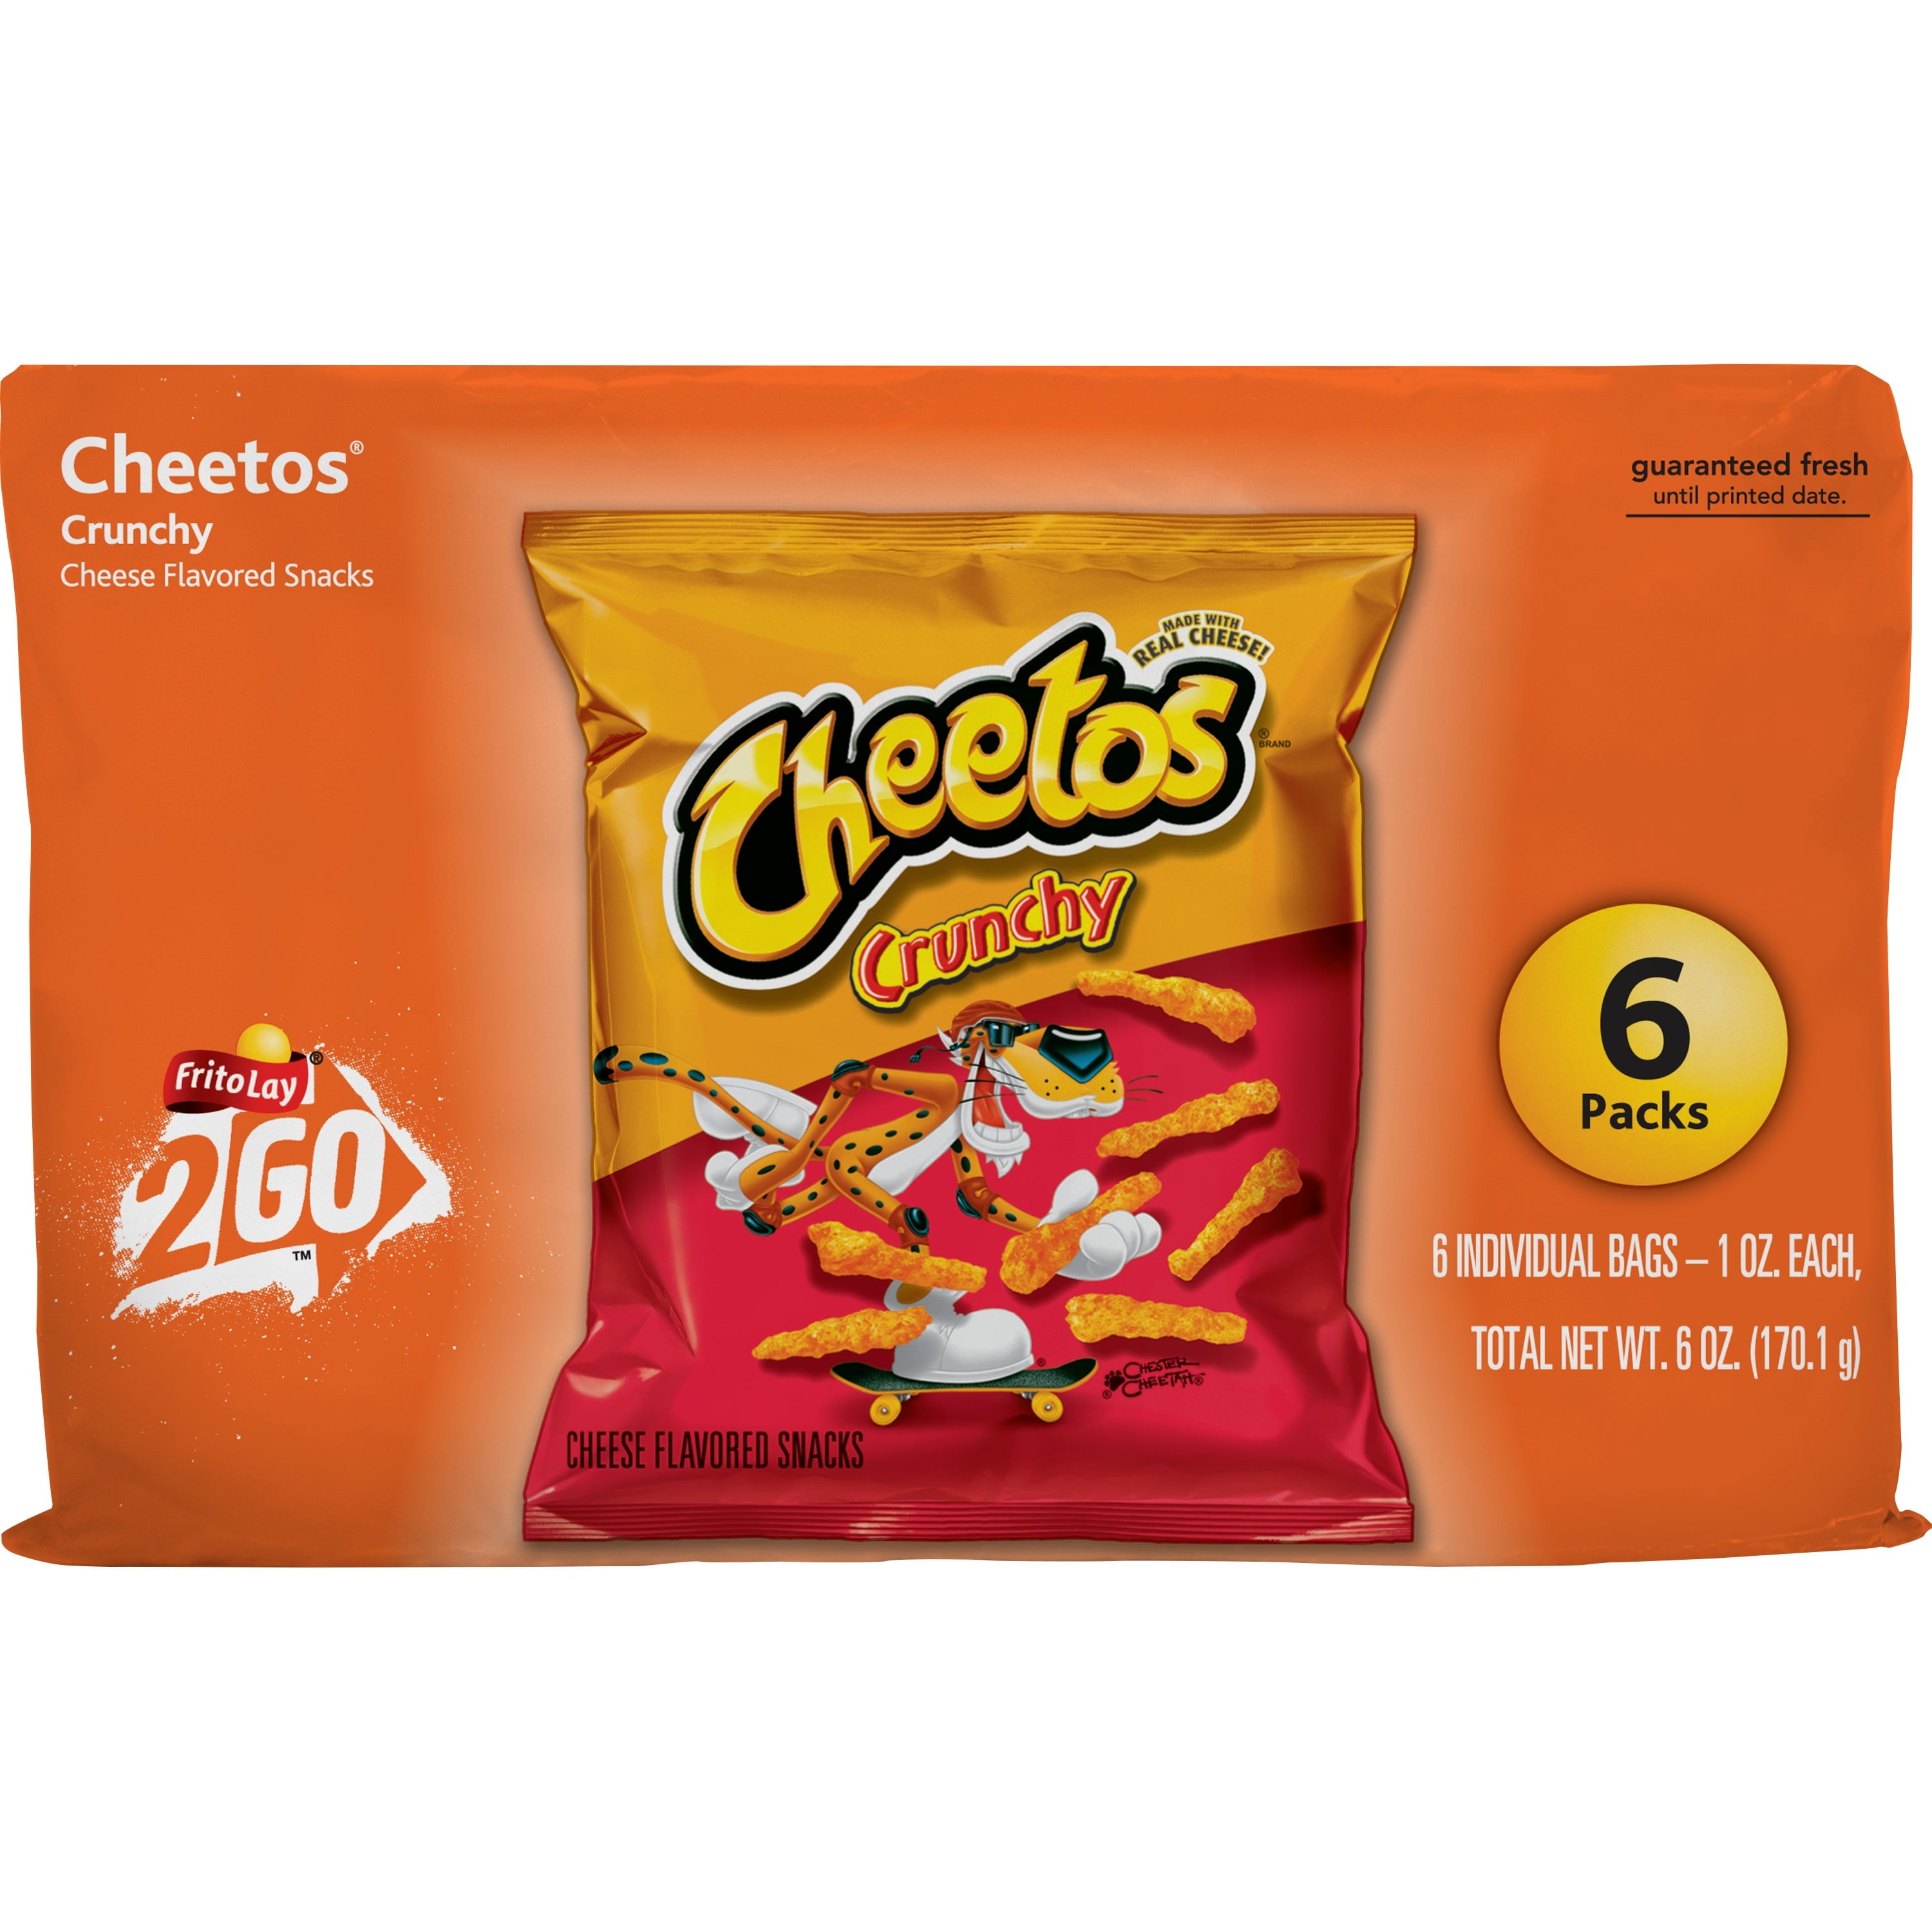 Cheetos Crunchy Flamin Hot Party Size 15 Oz